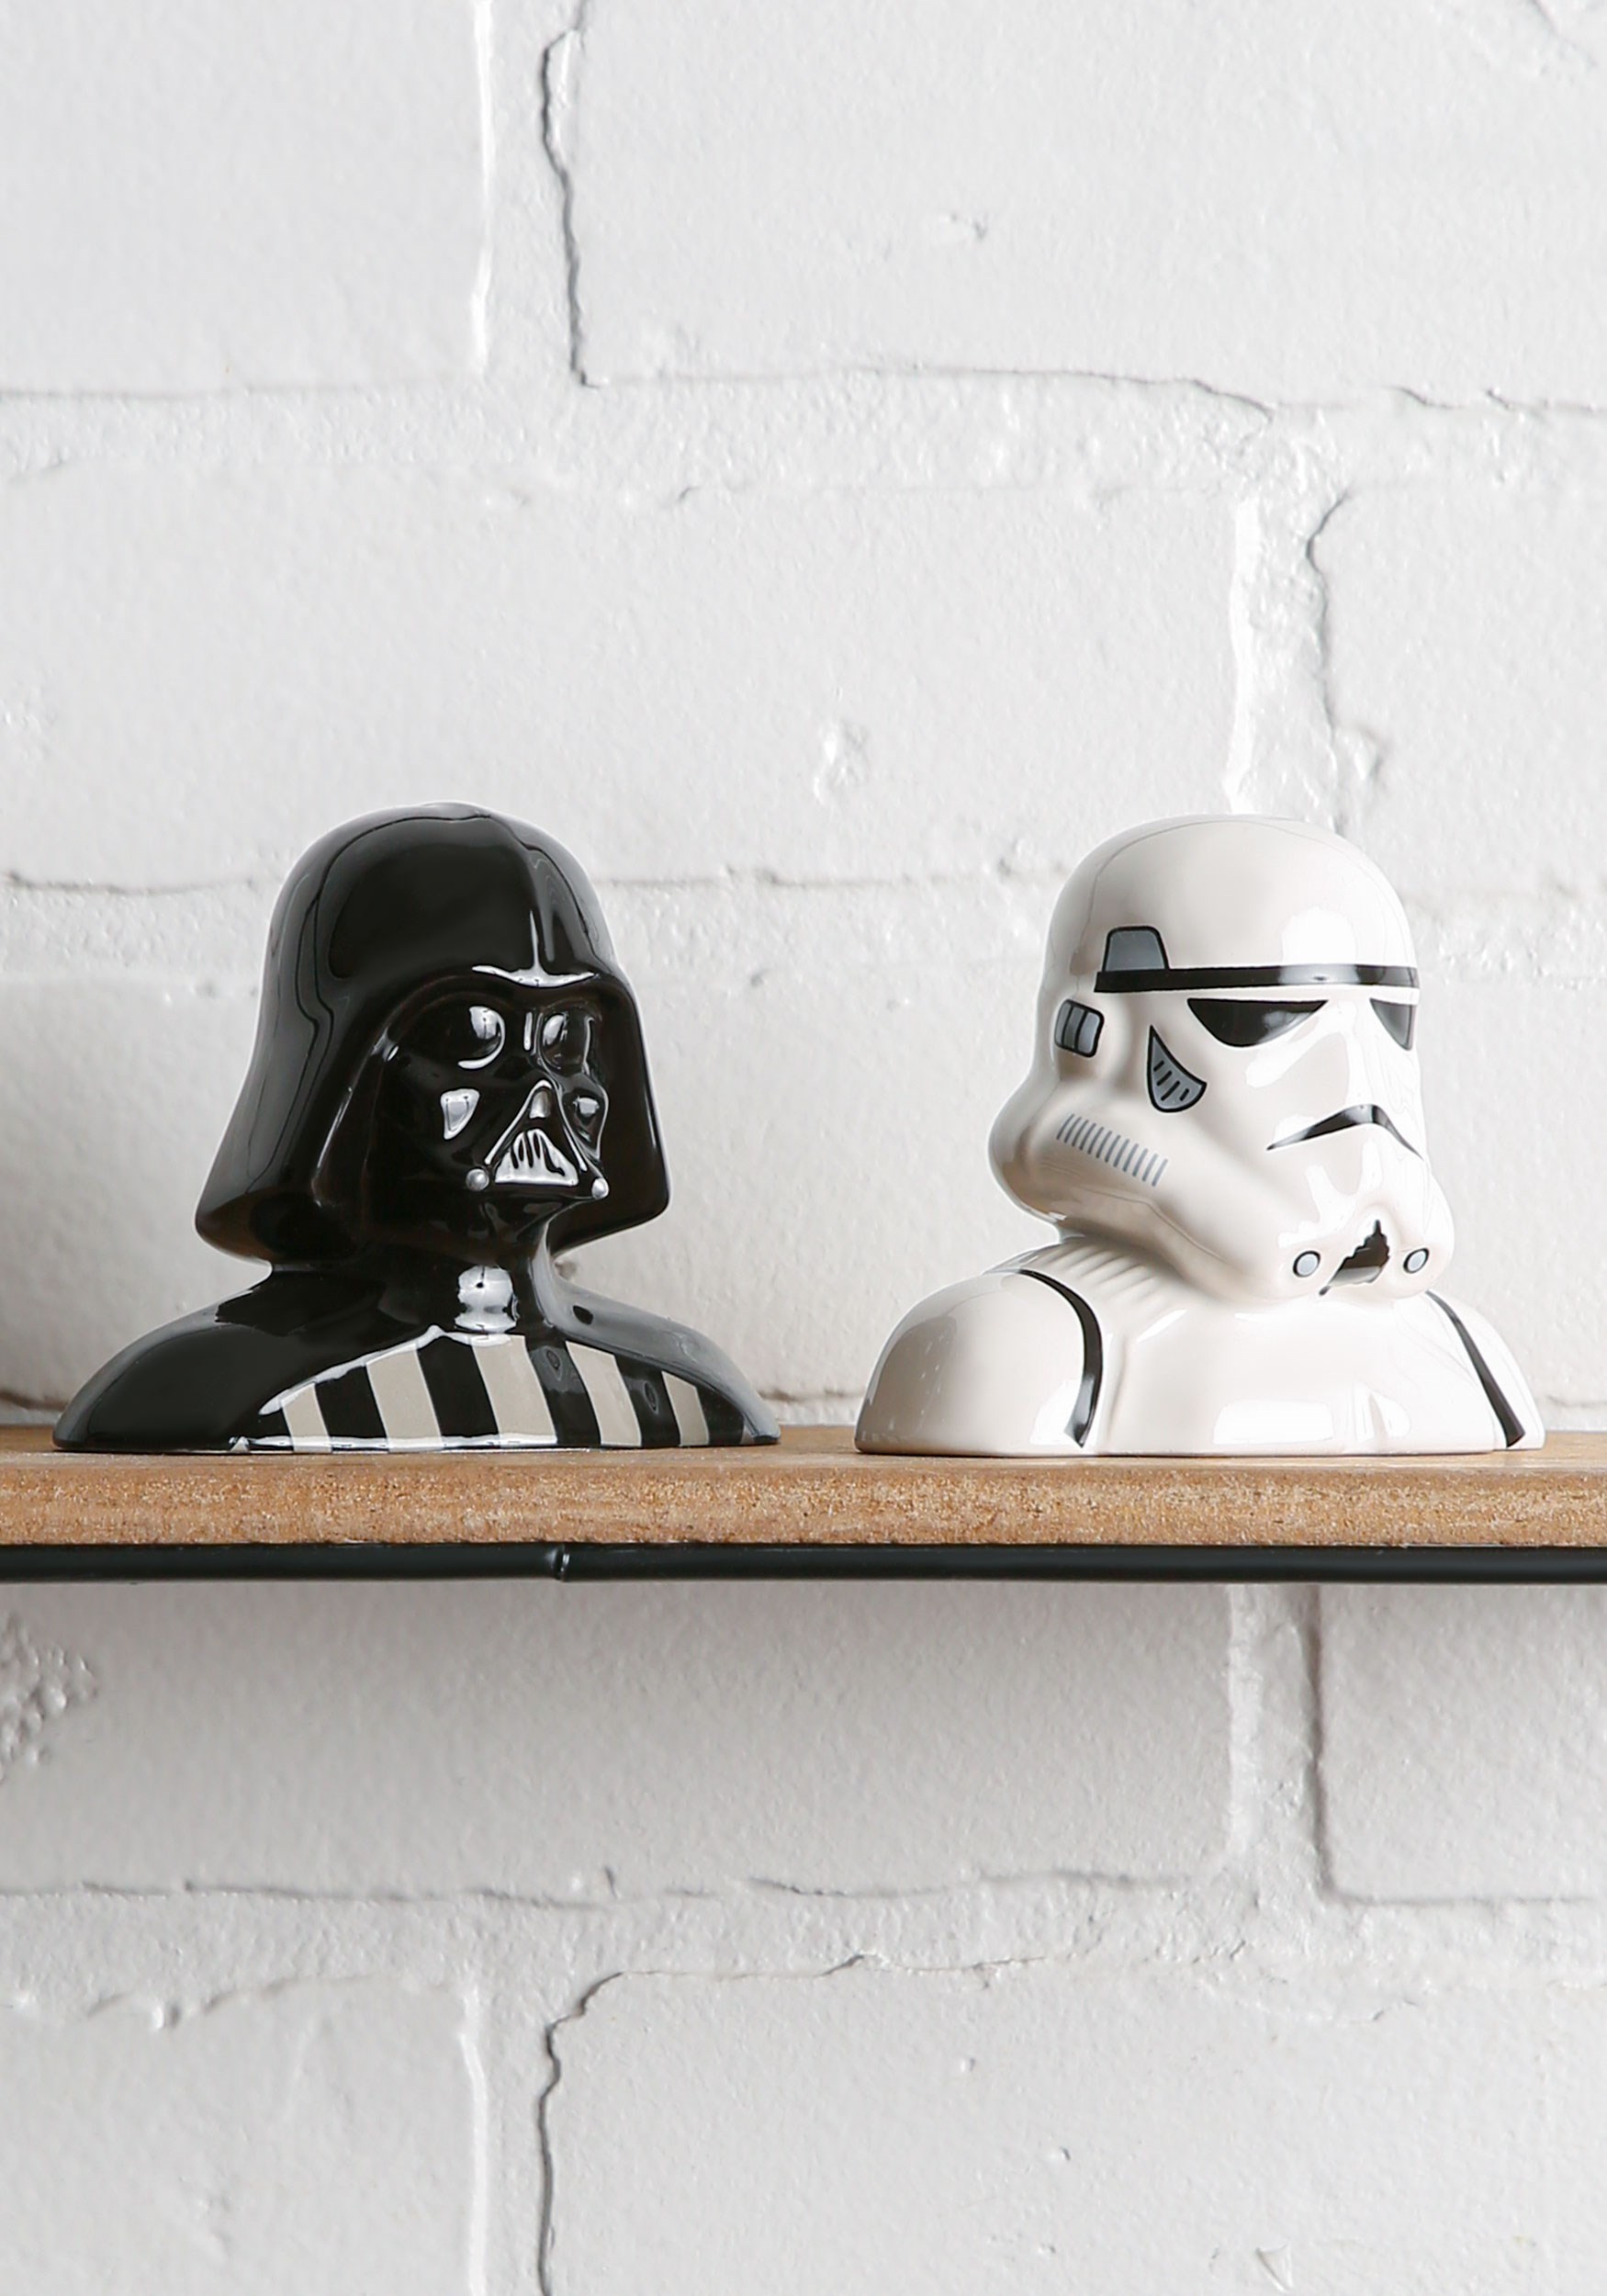 Darth Vader & Storm Trooper Star Wars Salt & Pepper Shakers